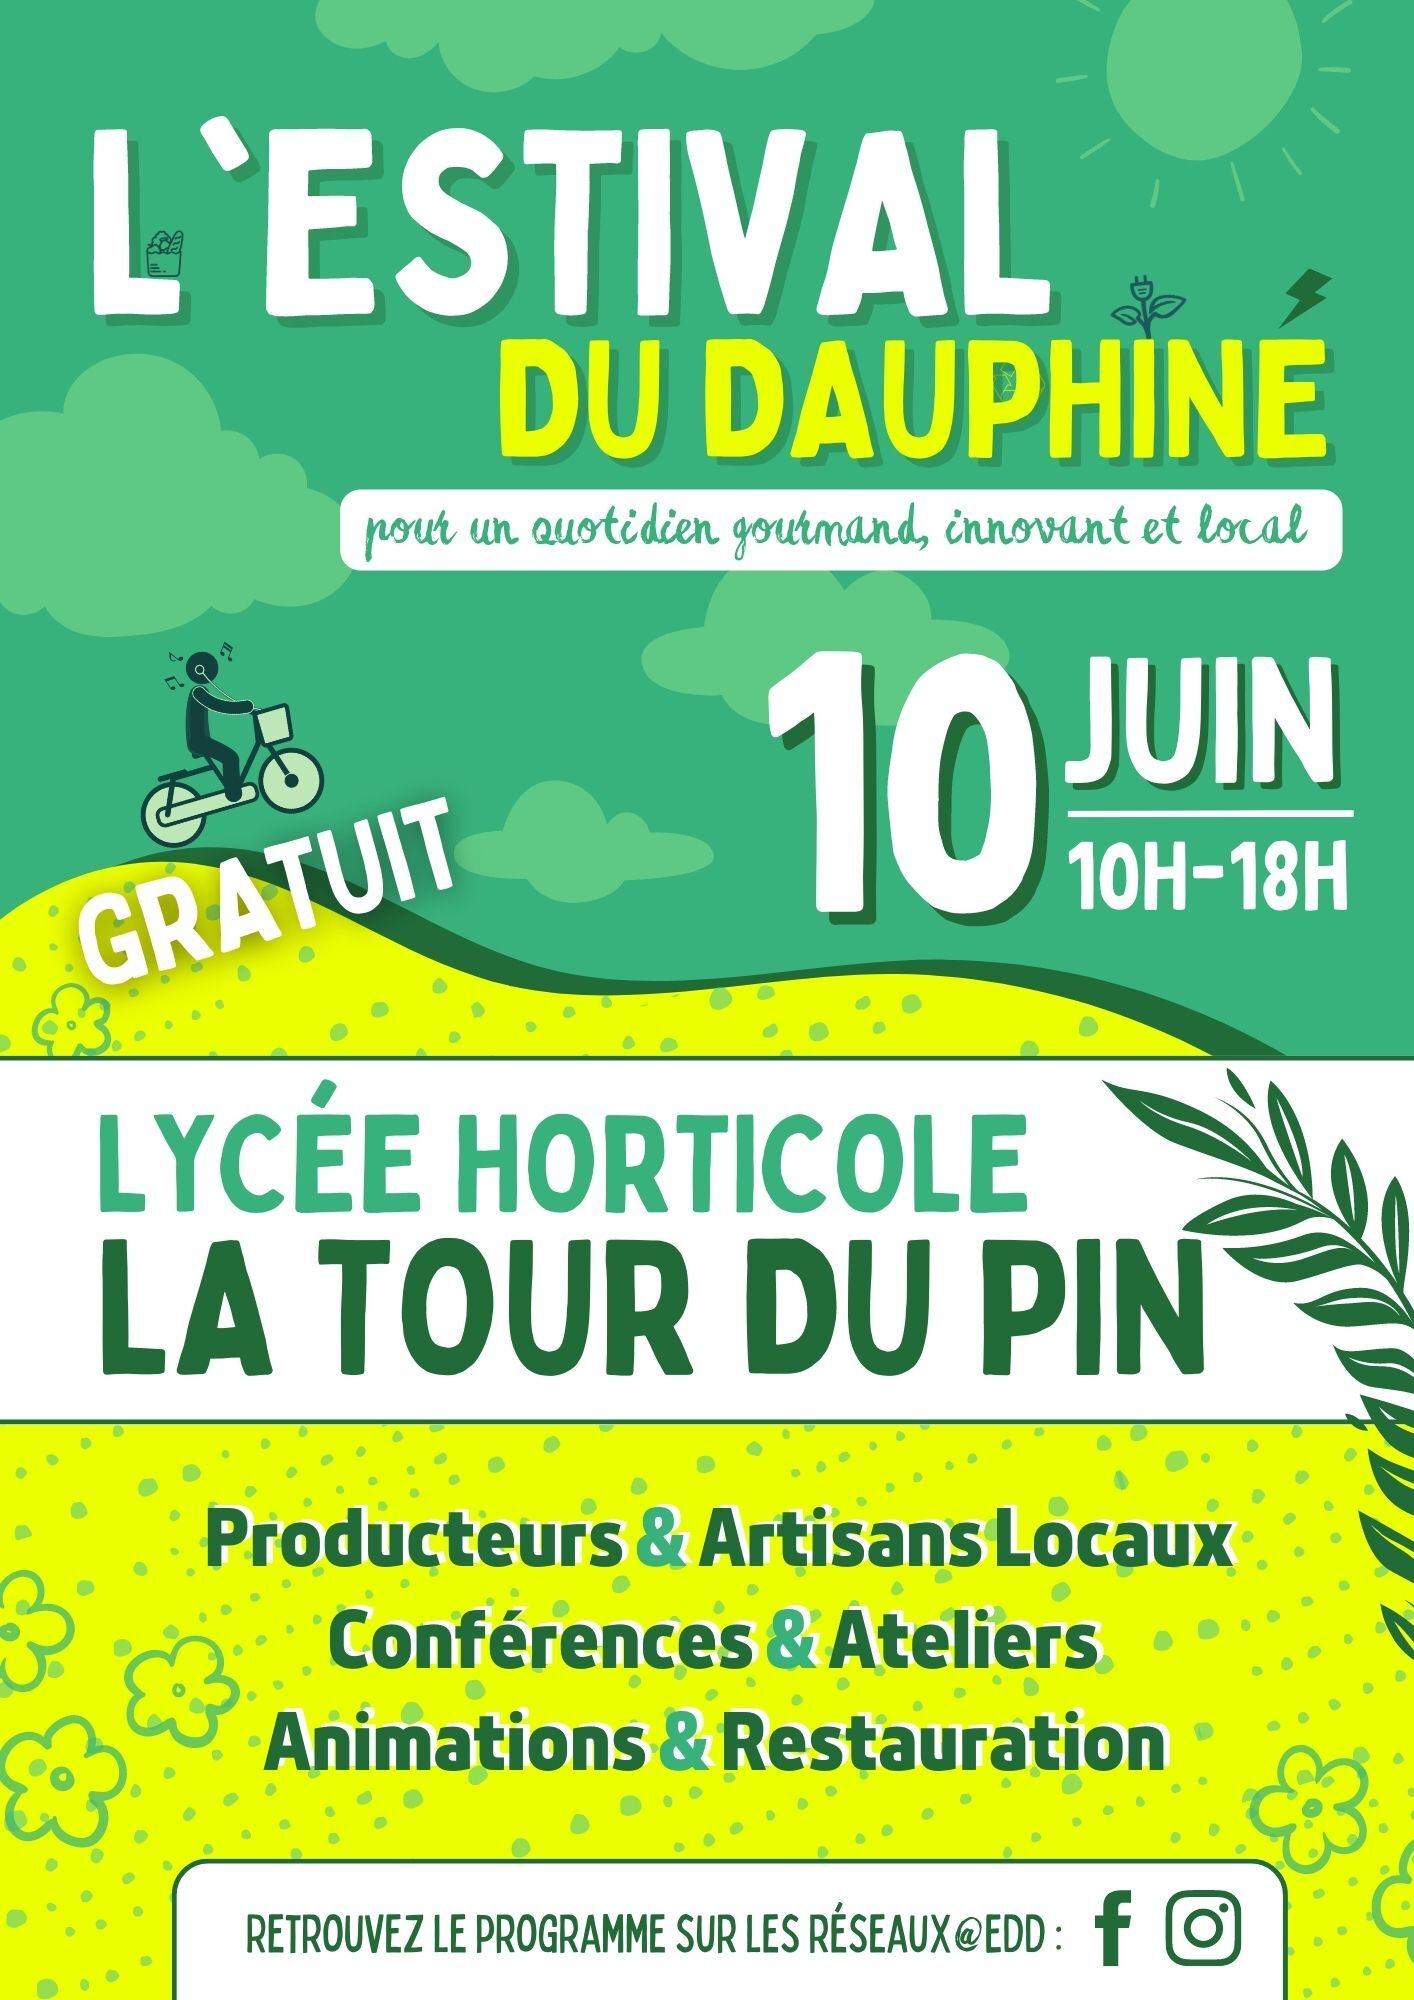 L’Estival du Dauphiné à La Tour du Pin (38)